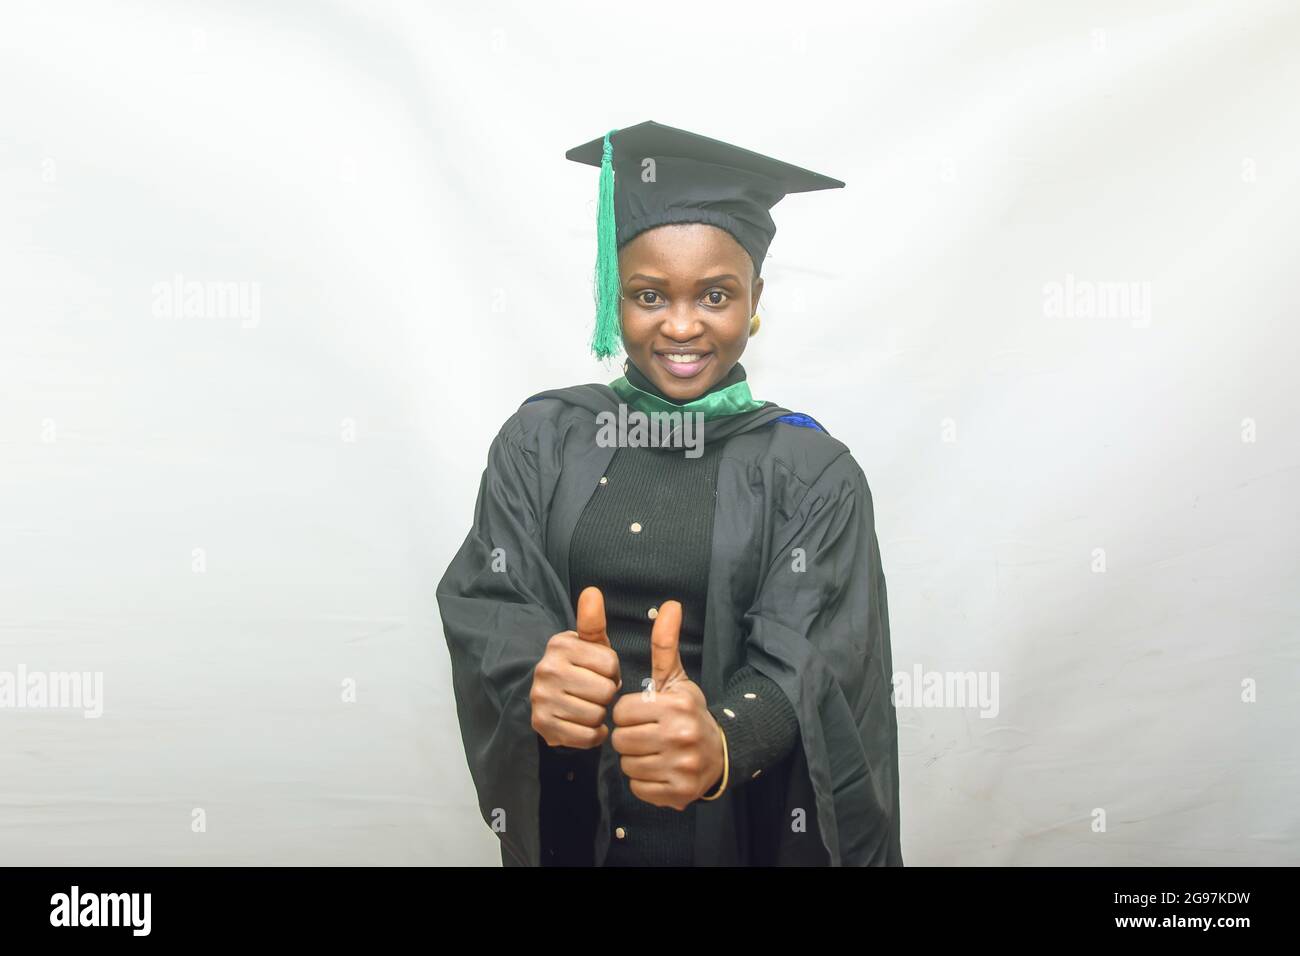 Photo d'une femme africaine finissant ou finissant ses études dans sa tenue de remise des diplômes noire et faisant joyeusement le pouce vers le haut geste Banque D'Images